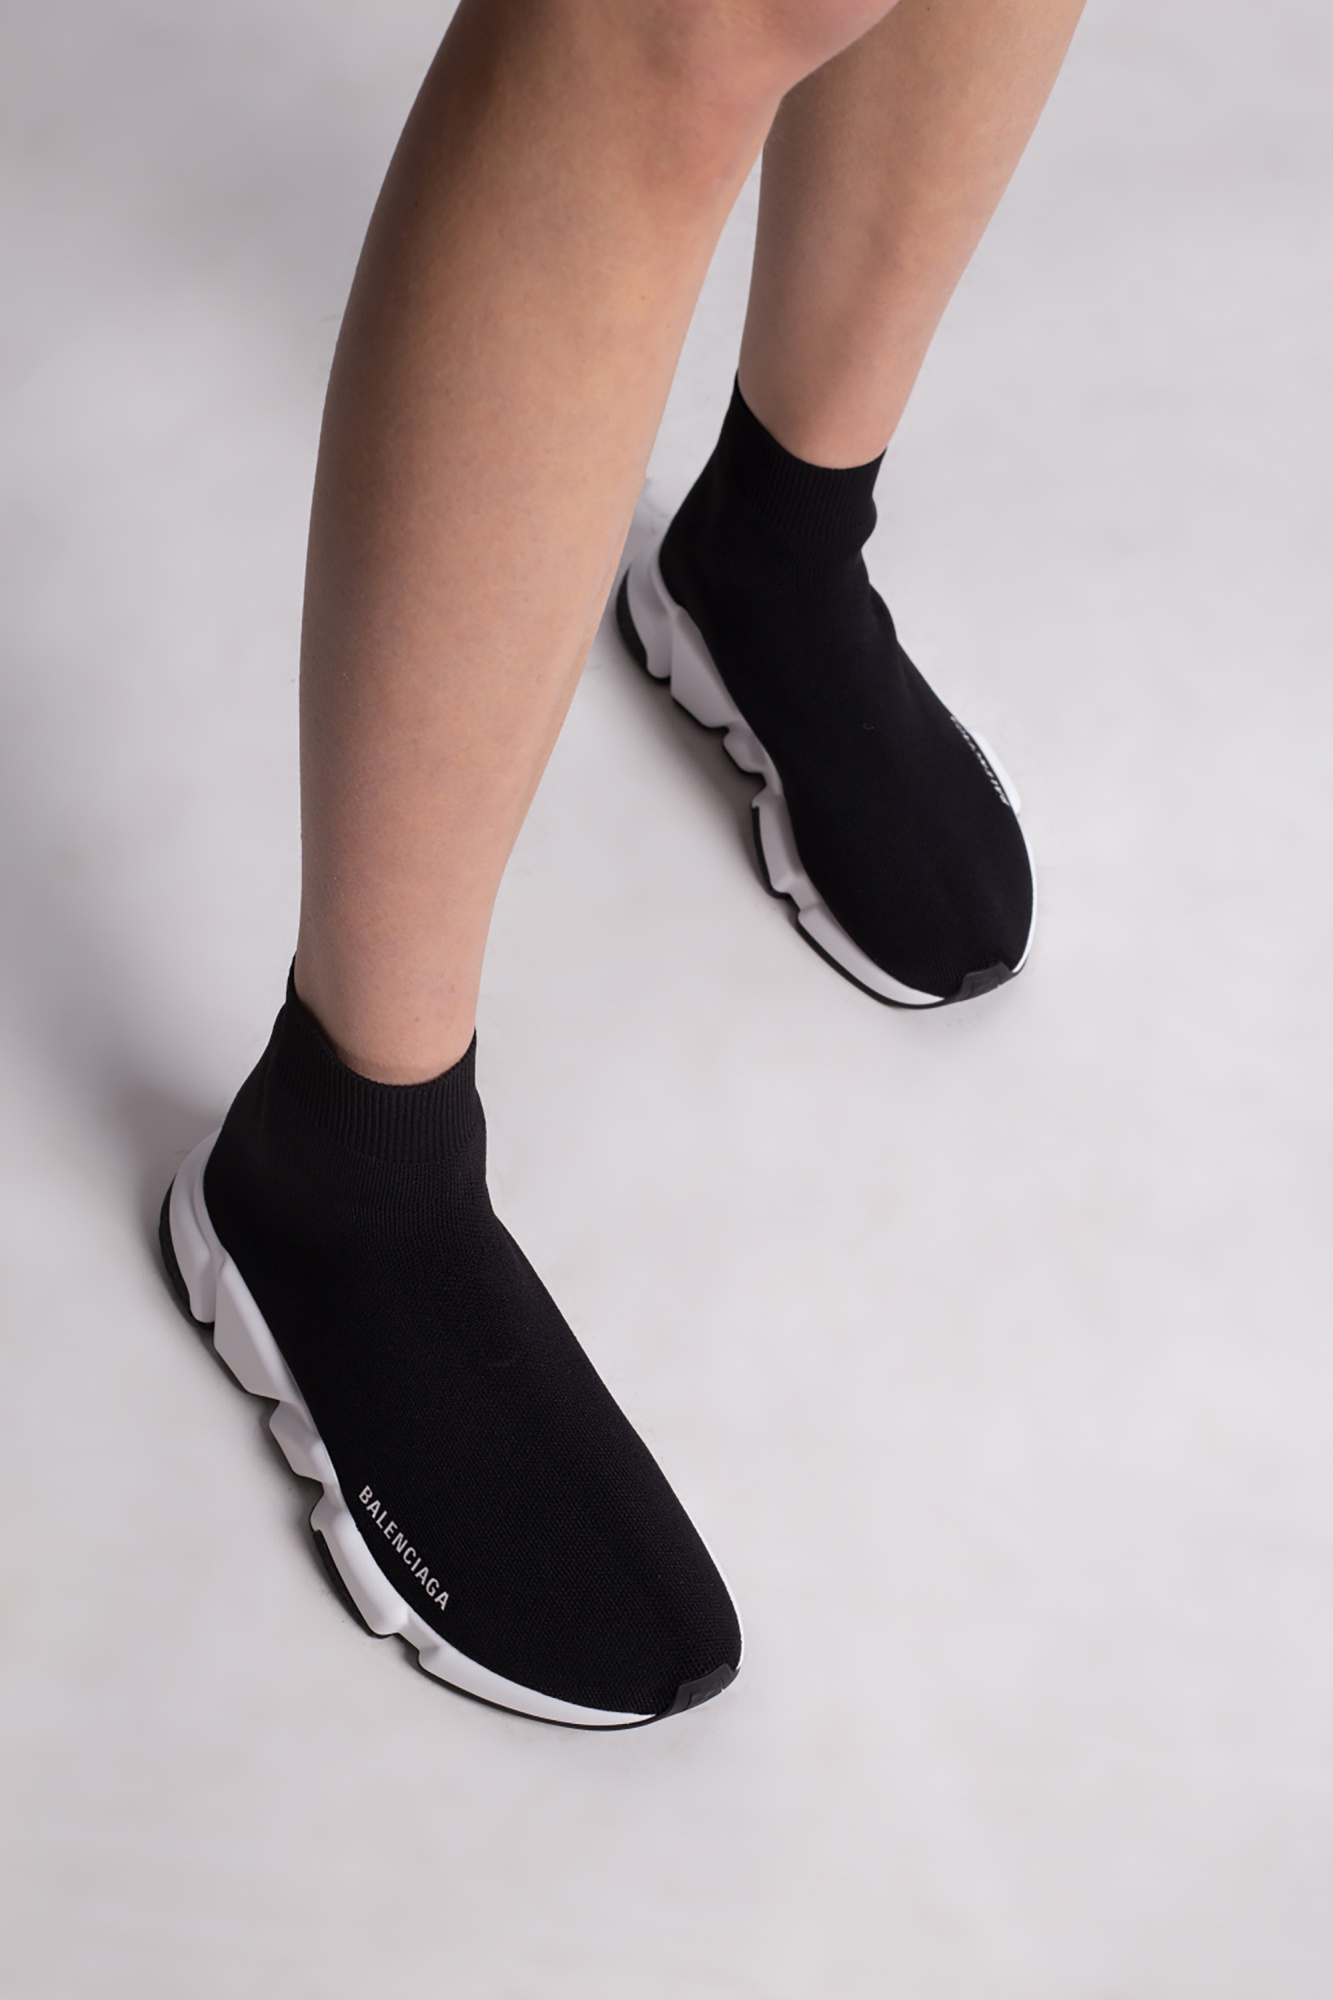 VETEMENTS Sock sneakers, Women's Shoes, IetpShops